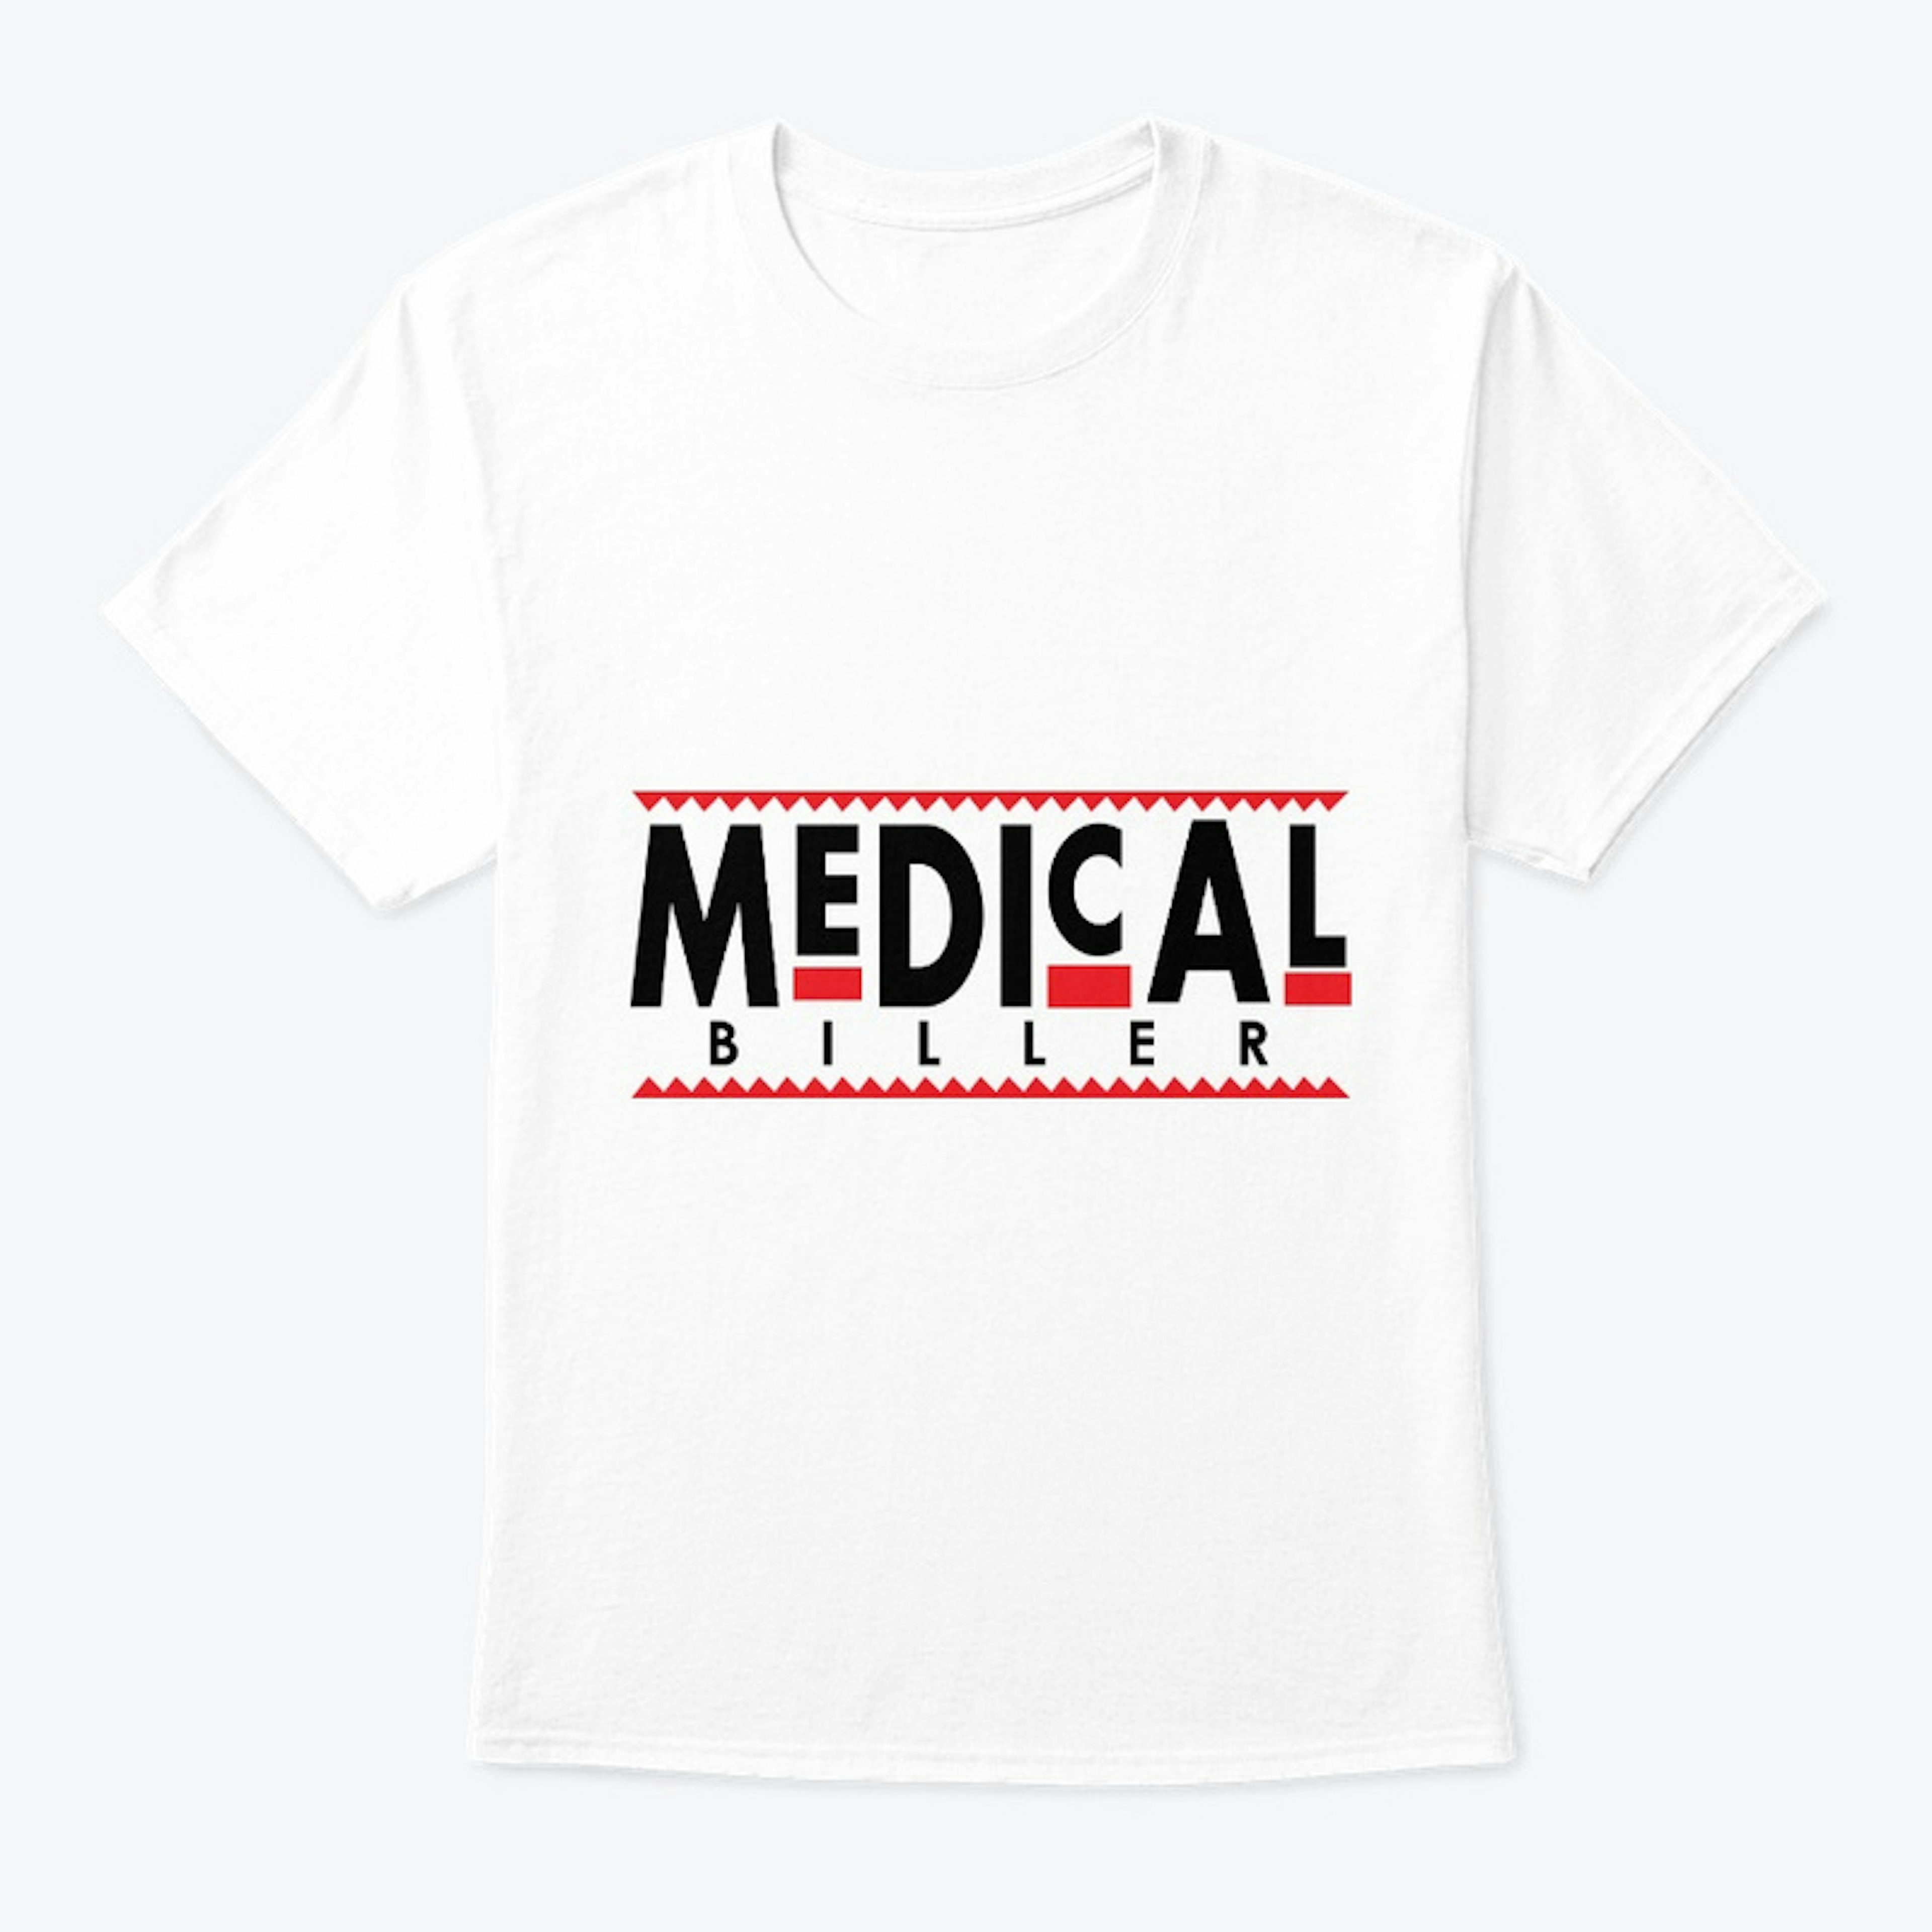 MedicalBiller